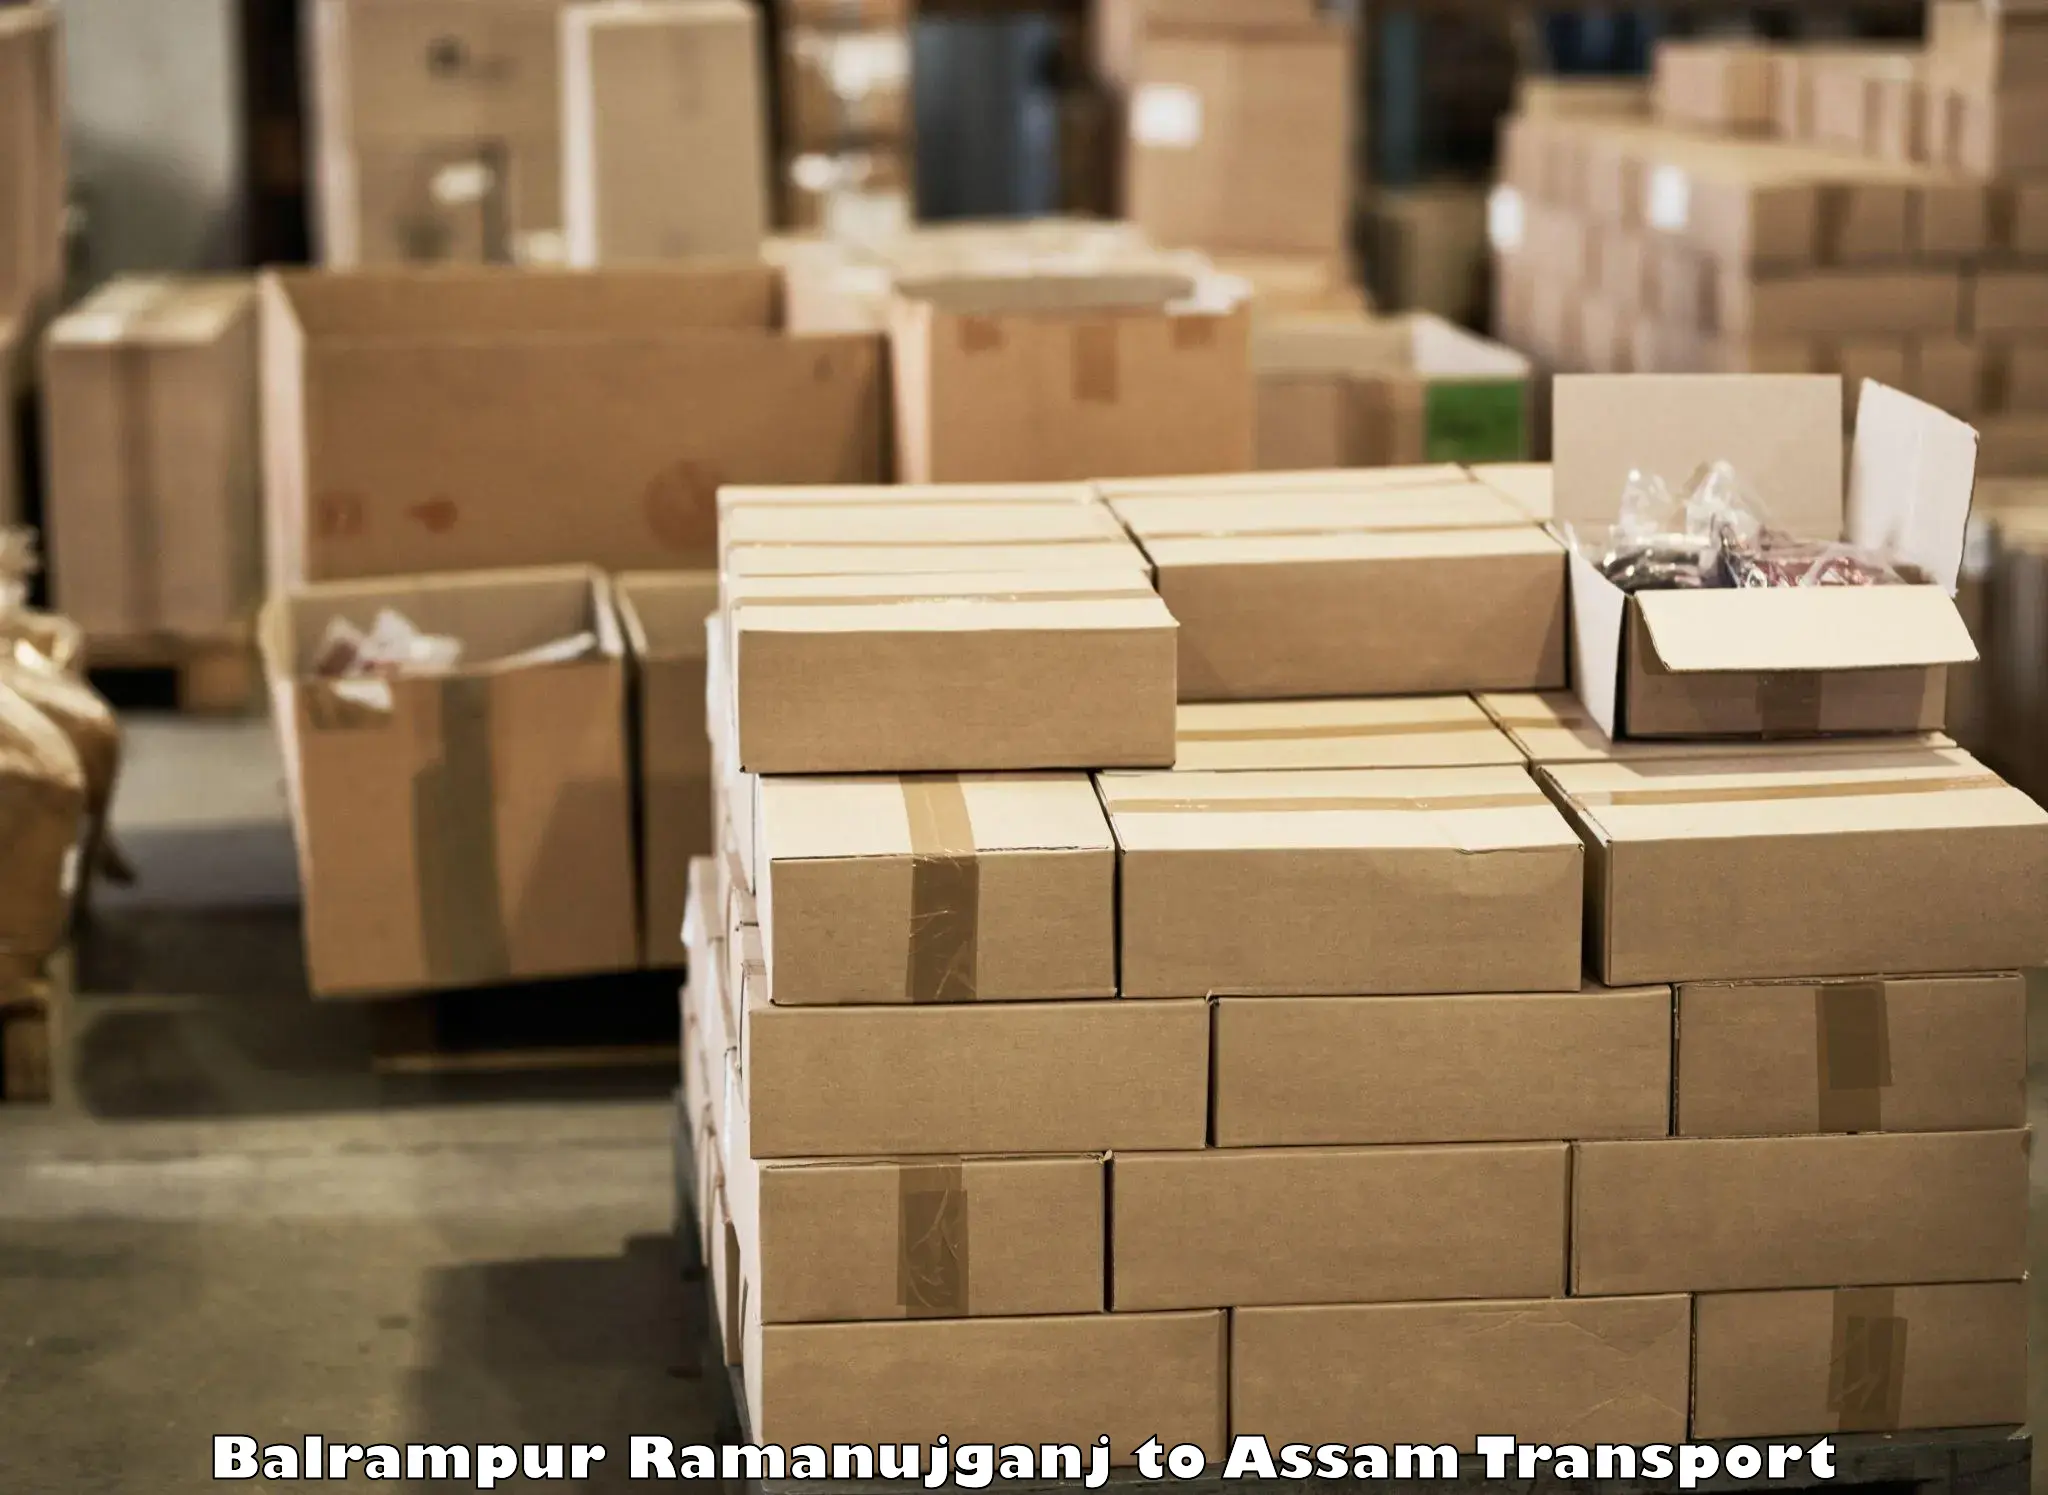 Package delivery services Balrampur Ramanujganj to Kokrajhar